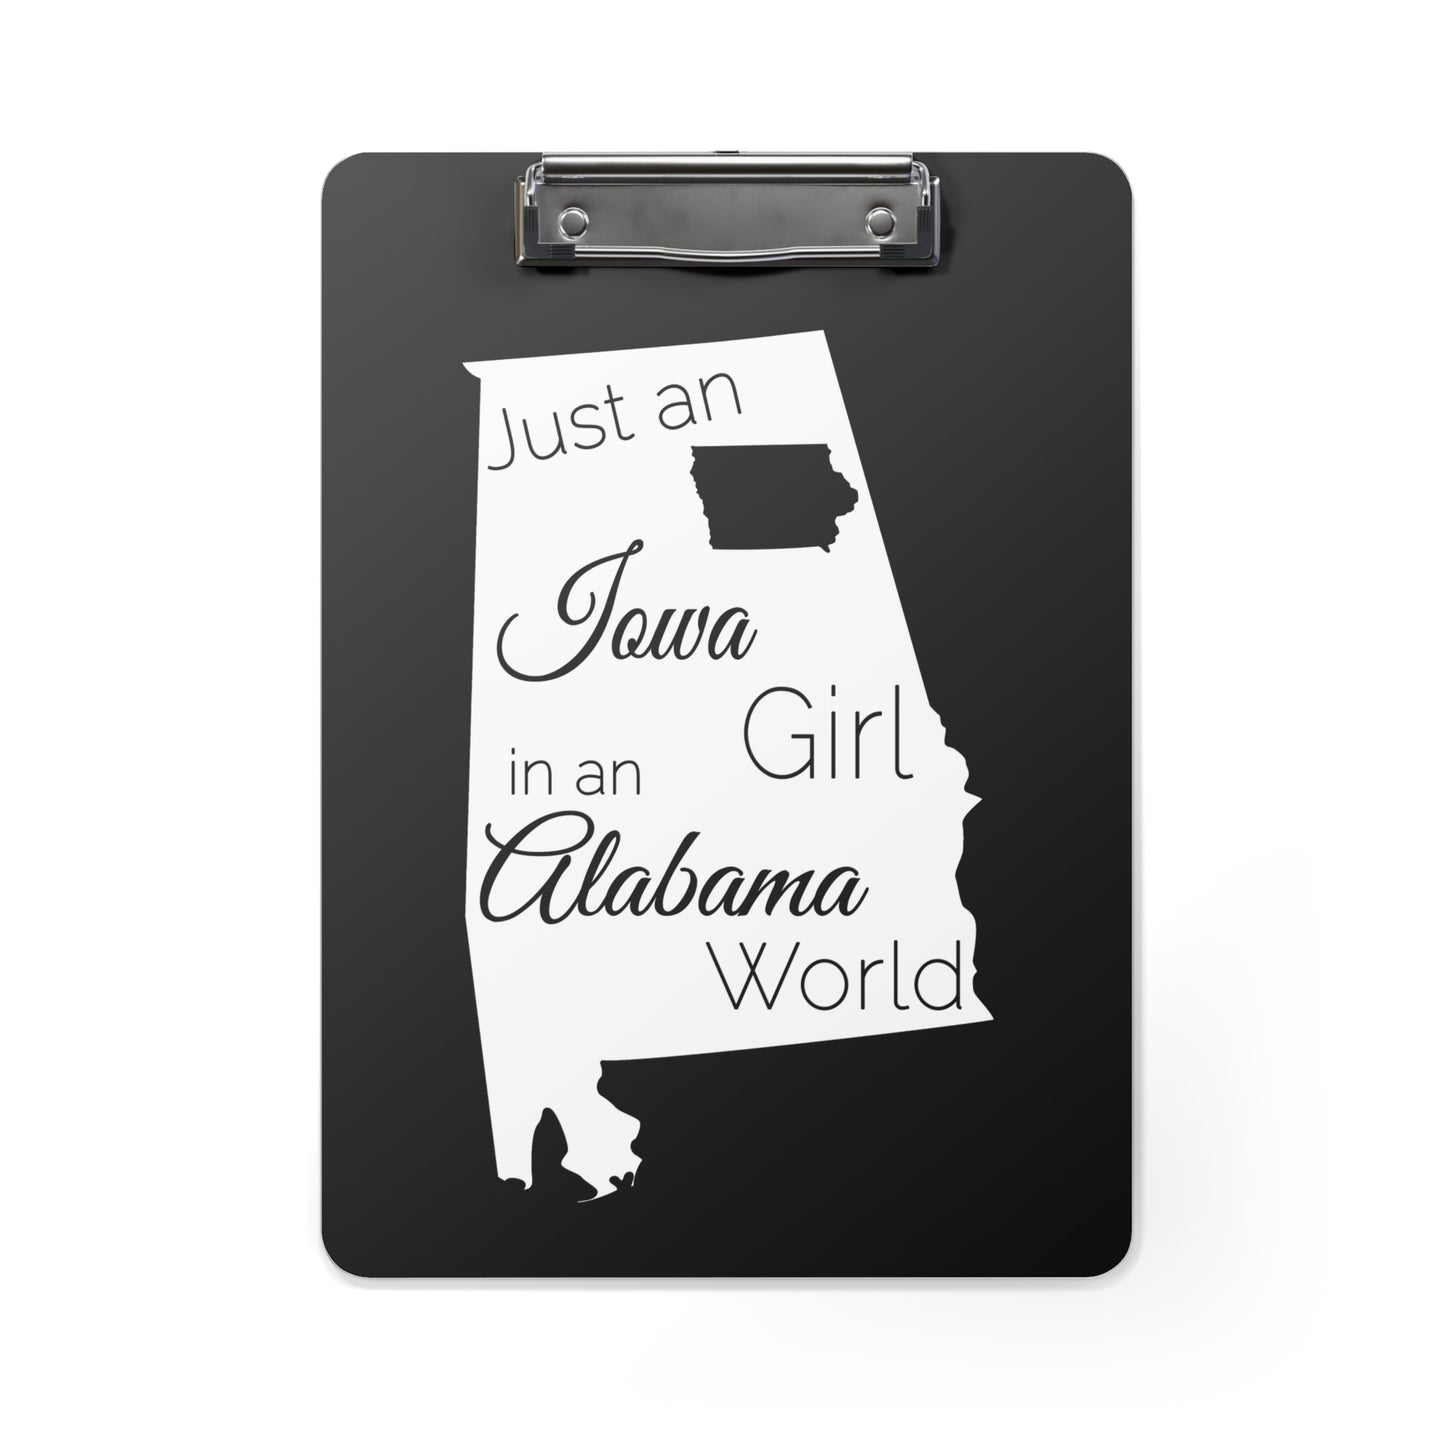 Just an Iowa Girl in an Alabama World Clipboard